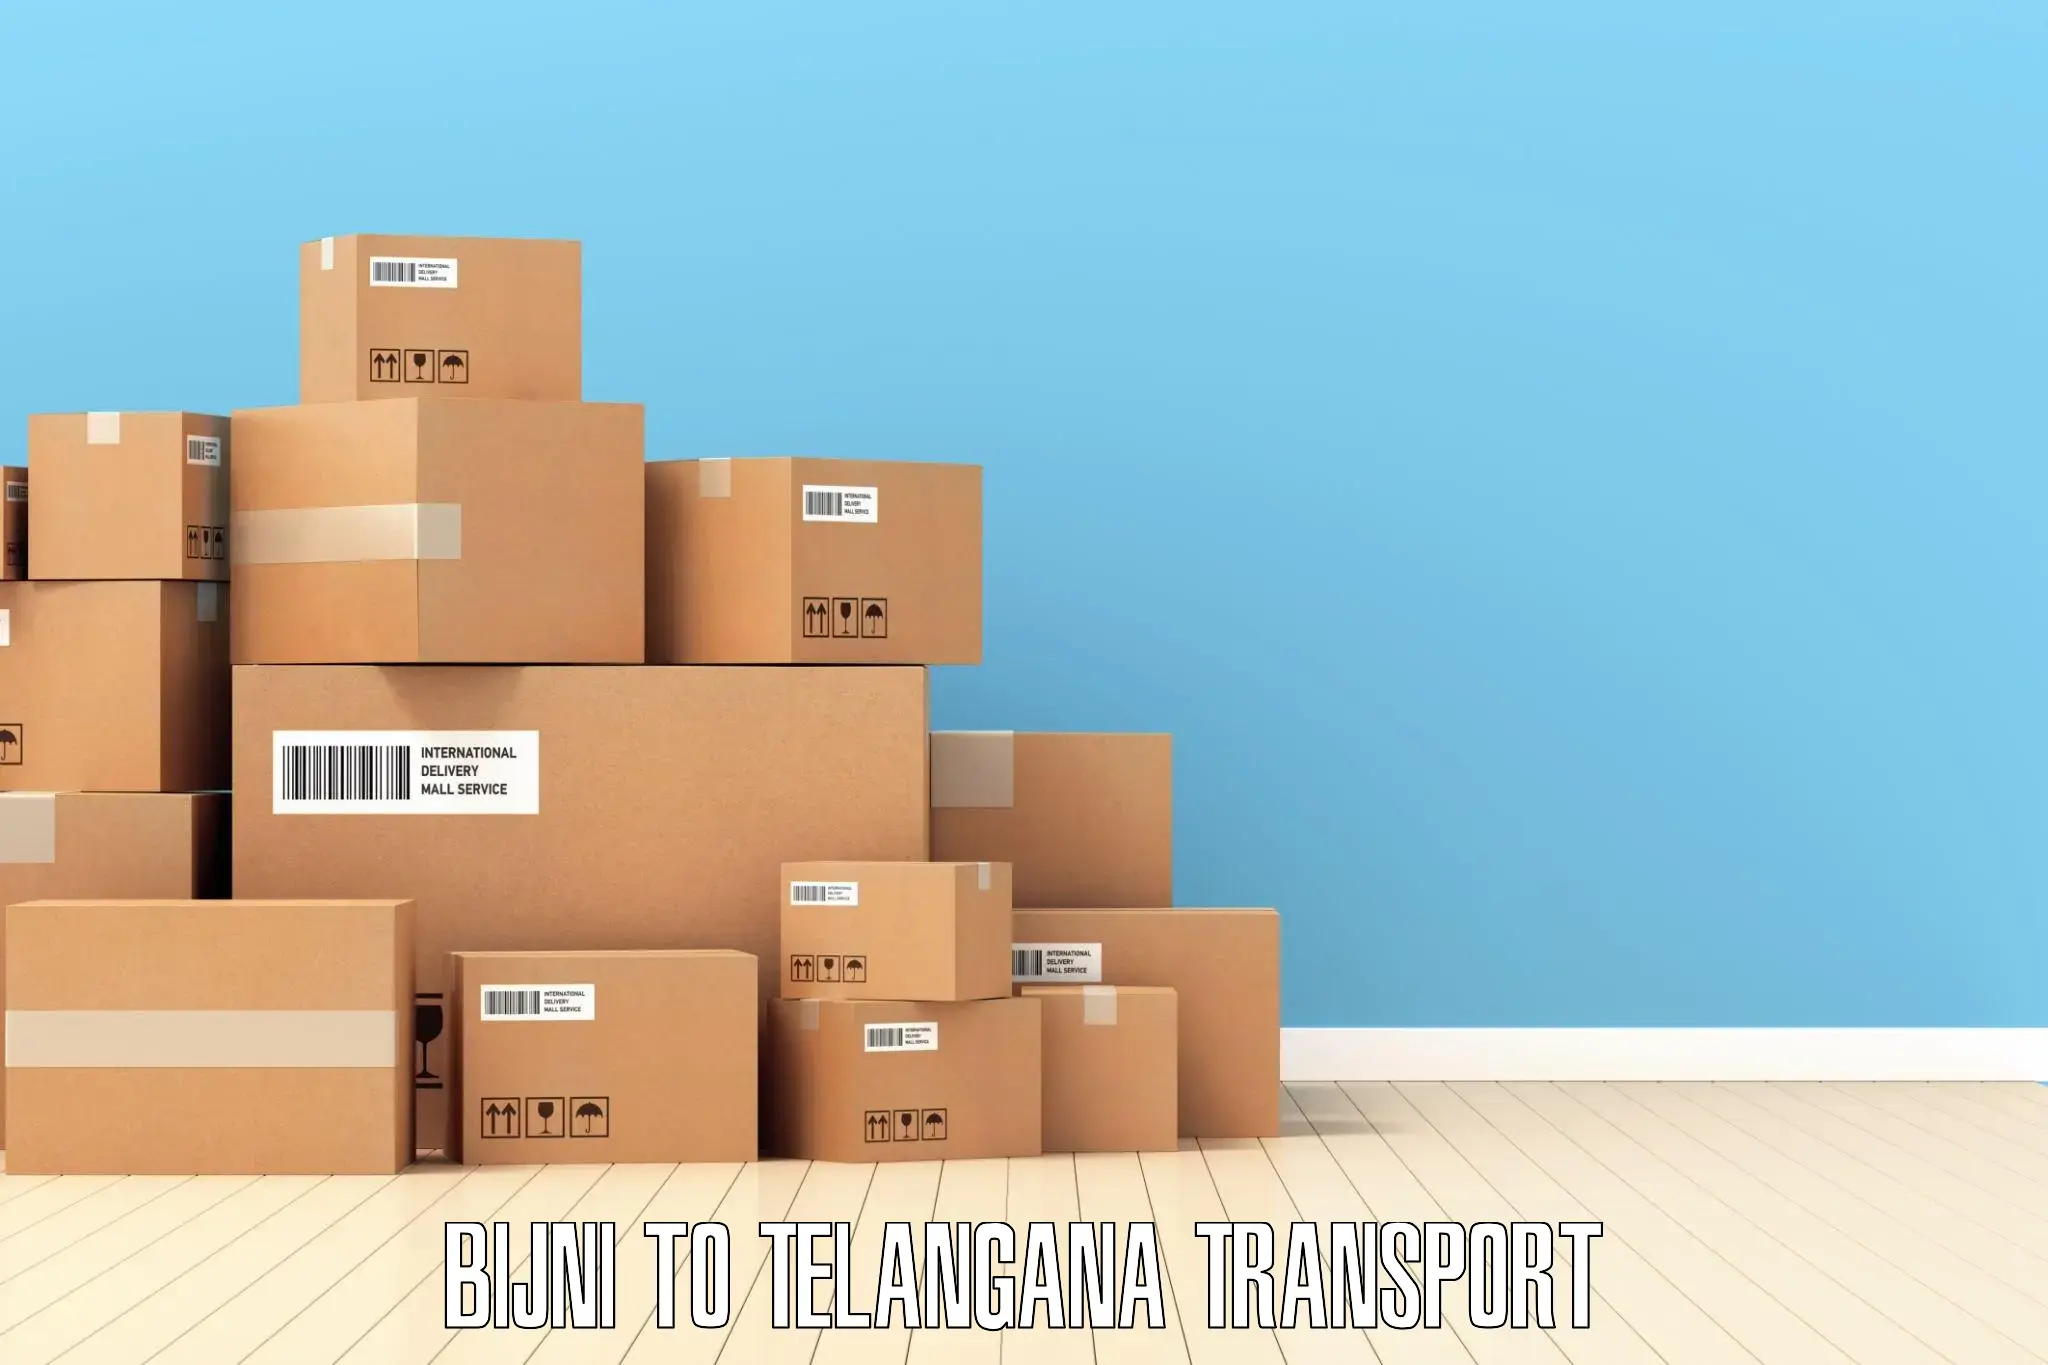 India truck logistics services in Bijni to Narmetta